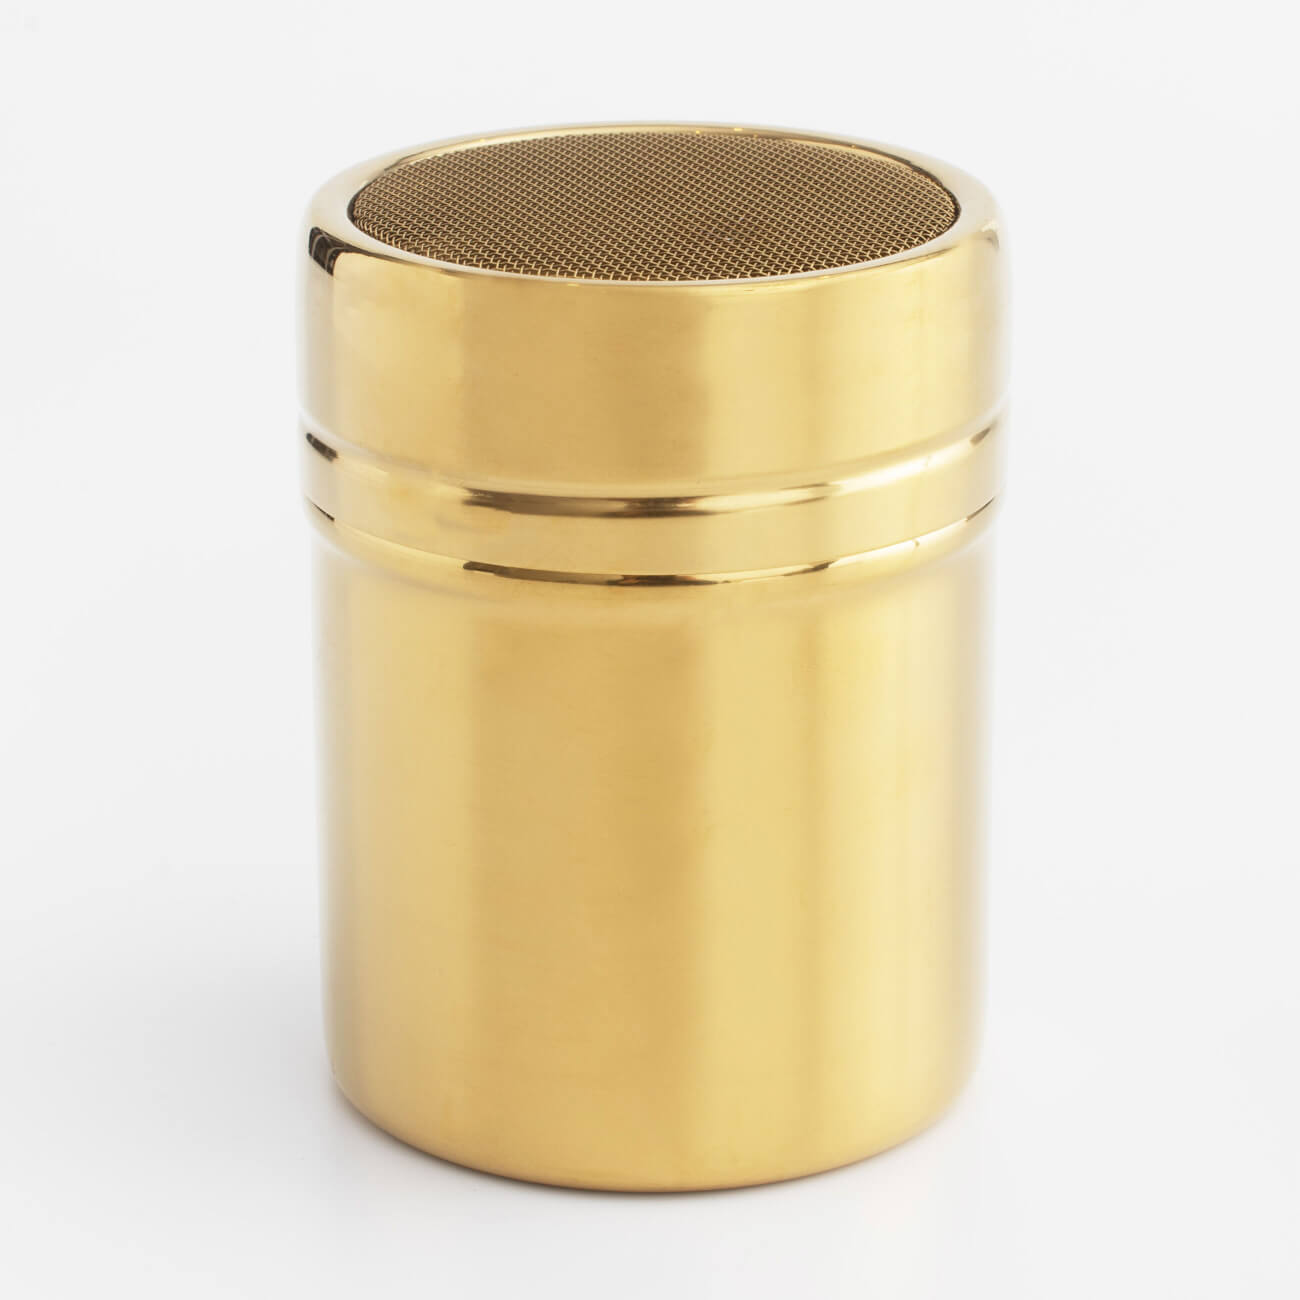 Сито-кружка, 9х7 см, с крышкой, сталь/пластик, золотистое, Classic gold сито пластик 3 шт с ручкой альтернатива м545